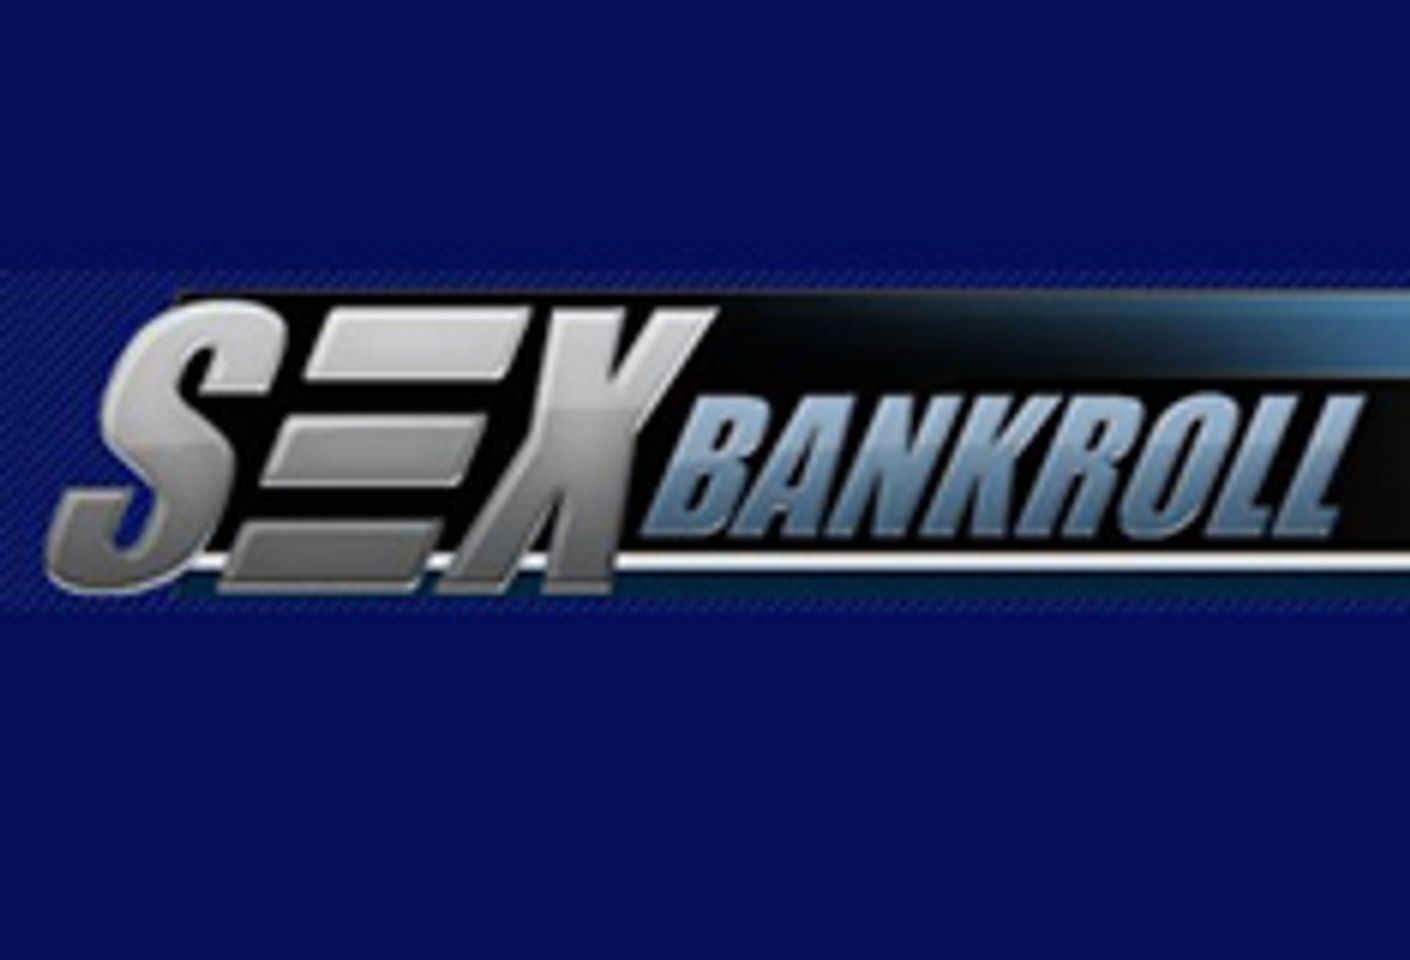 Sexbankroll Launches V2 Affiliate Program, Revamped Website